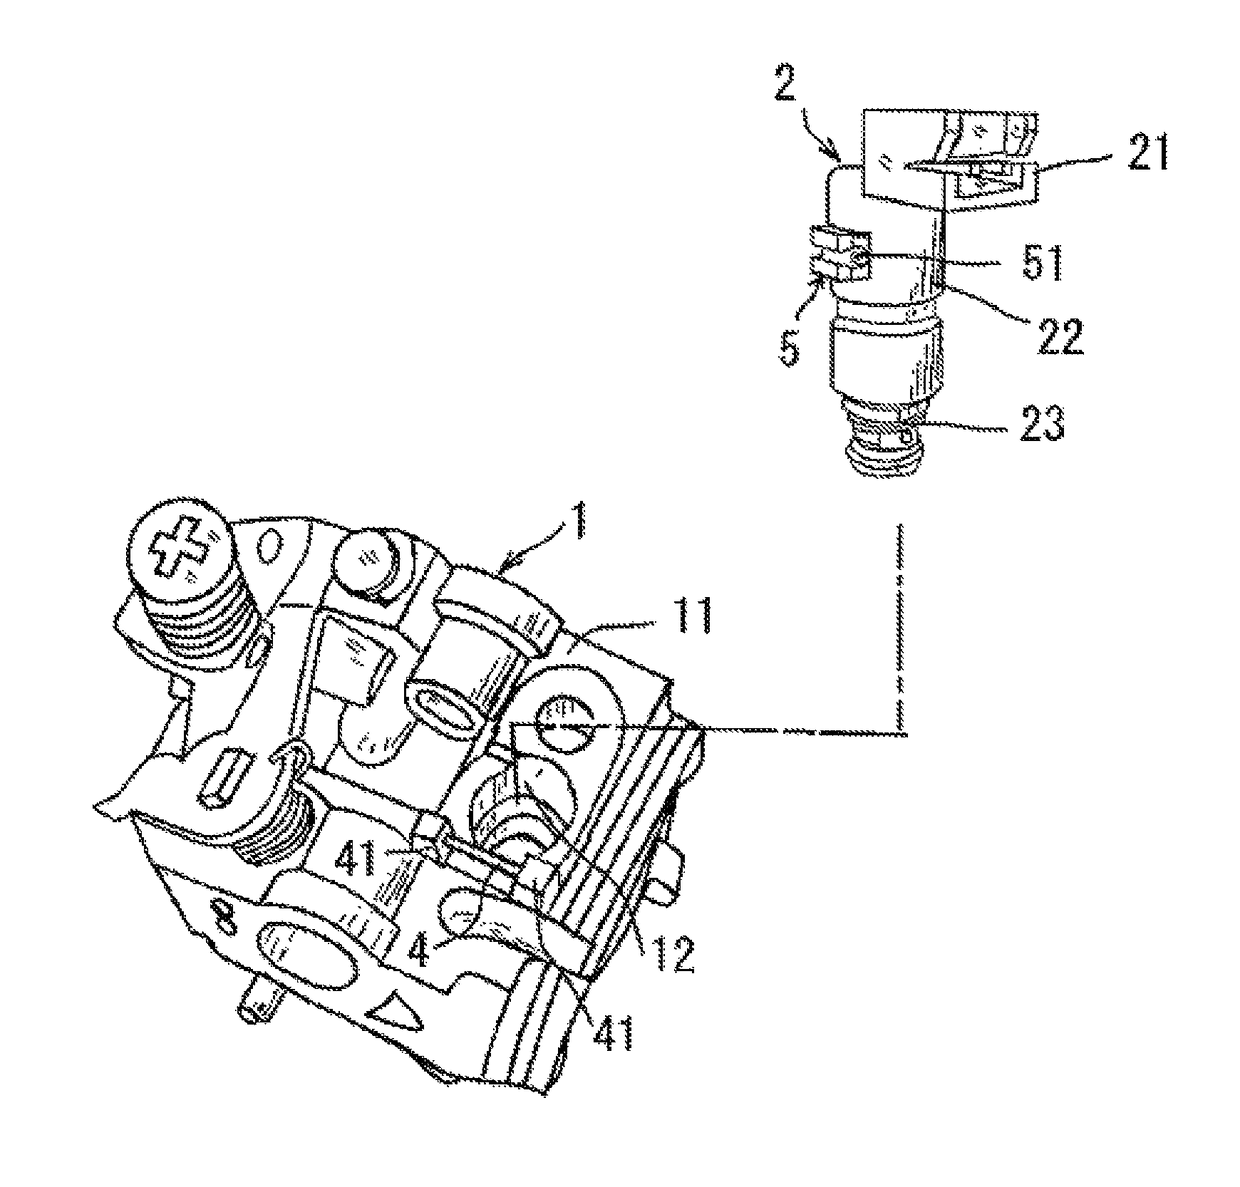 Attachment structure for solenoid valve to carburetor unit